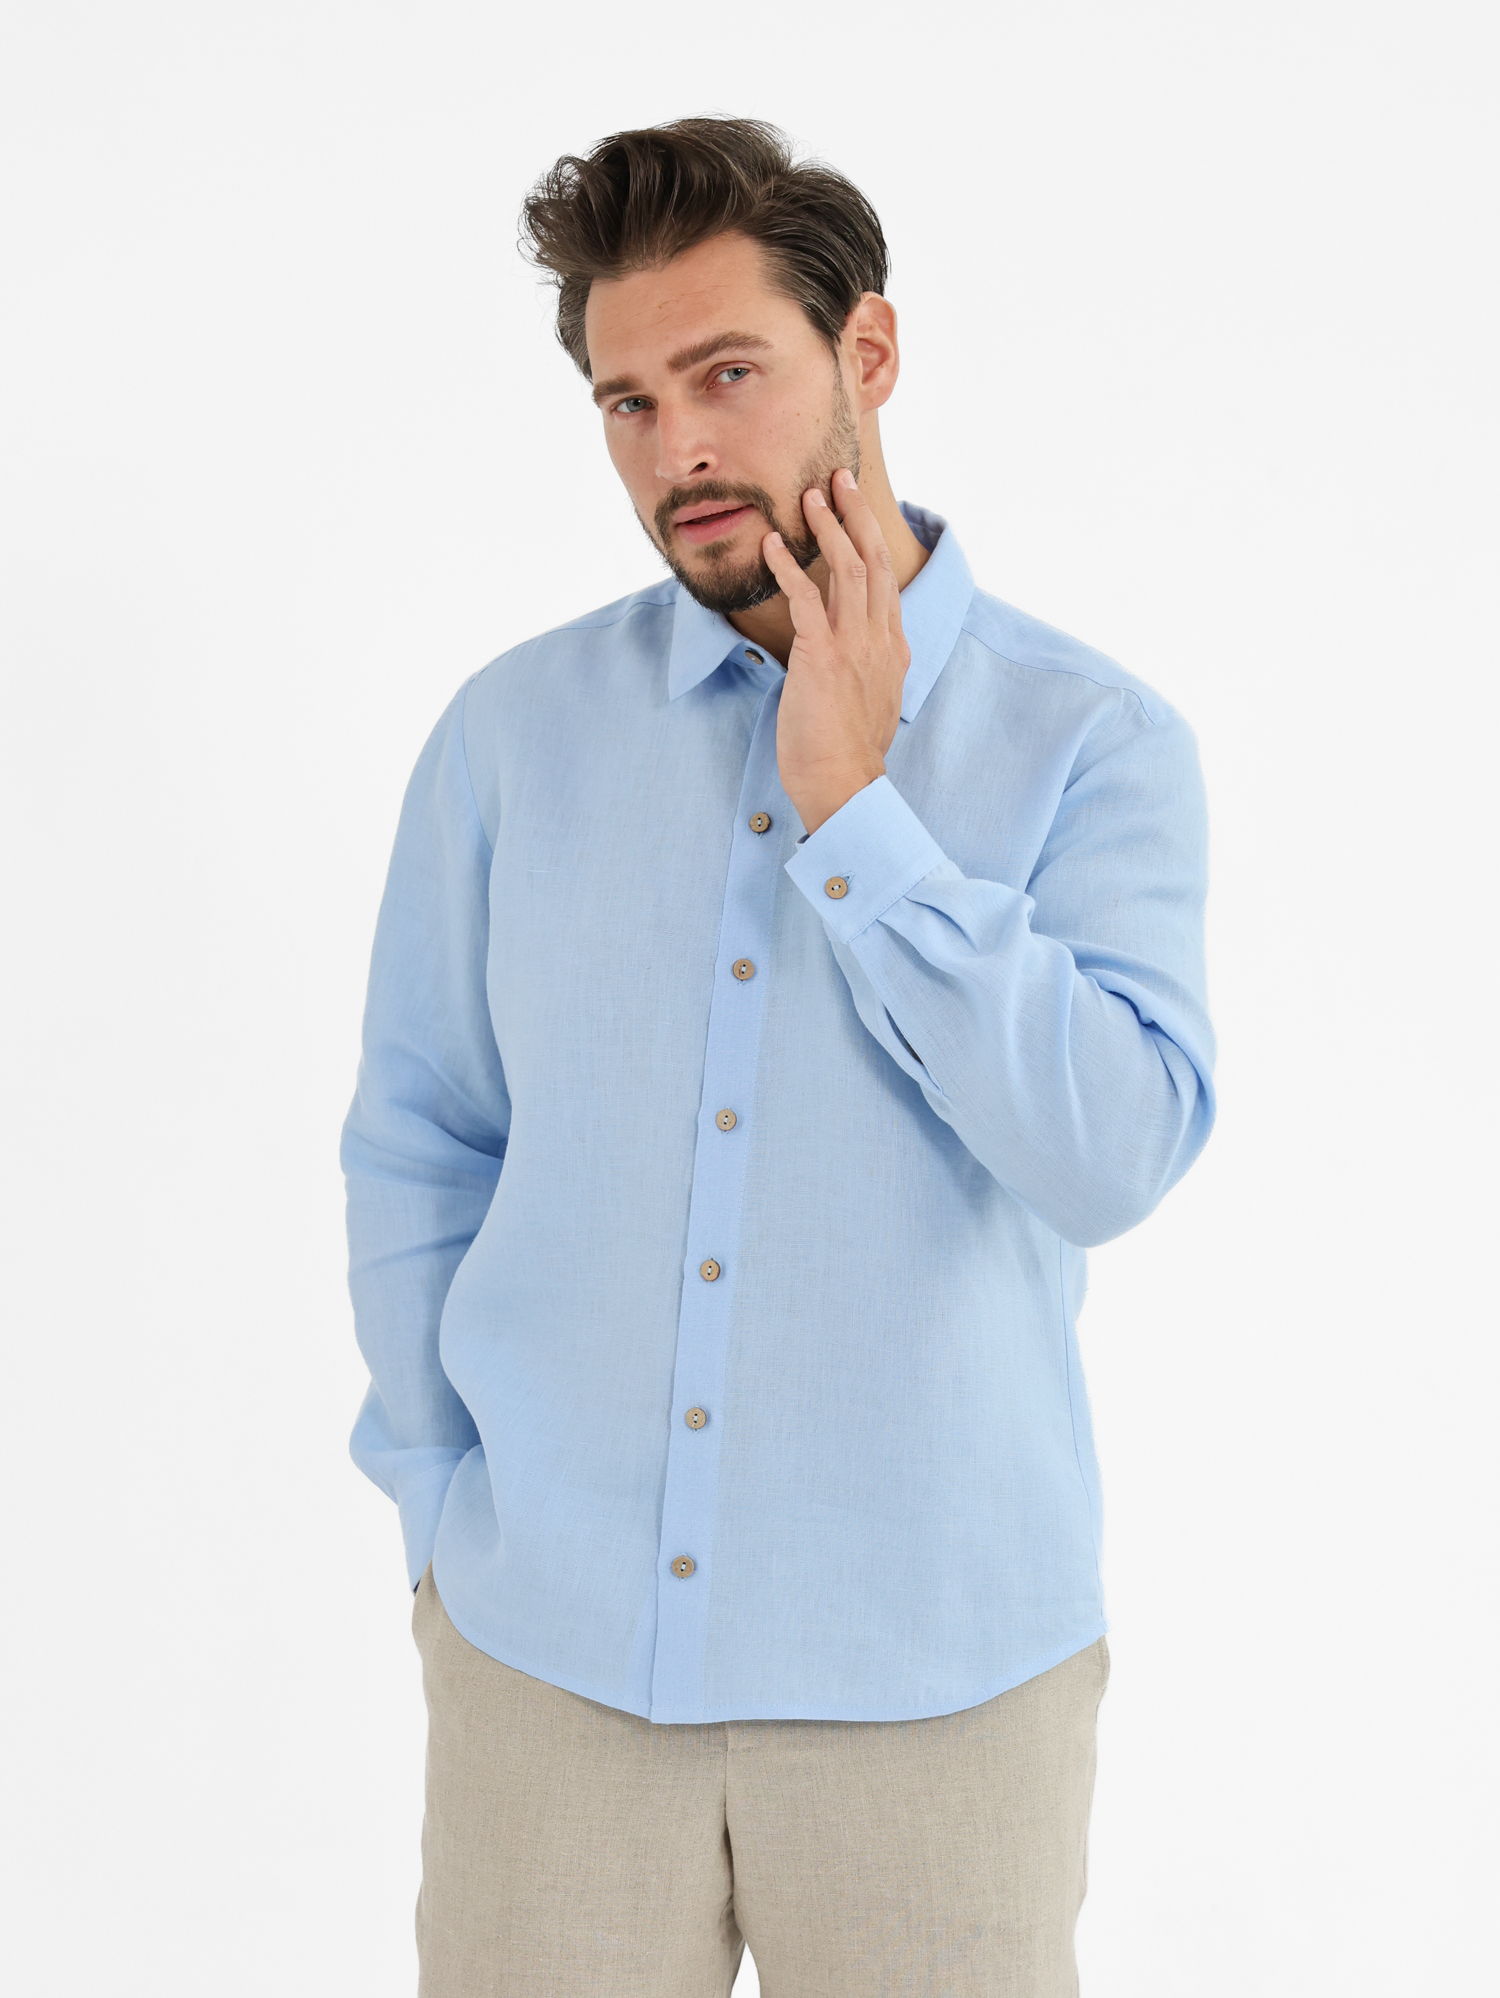 Blue men's linen shirt